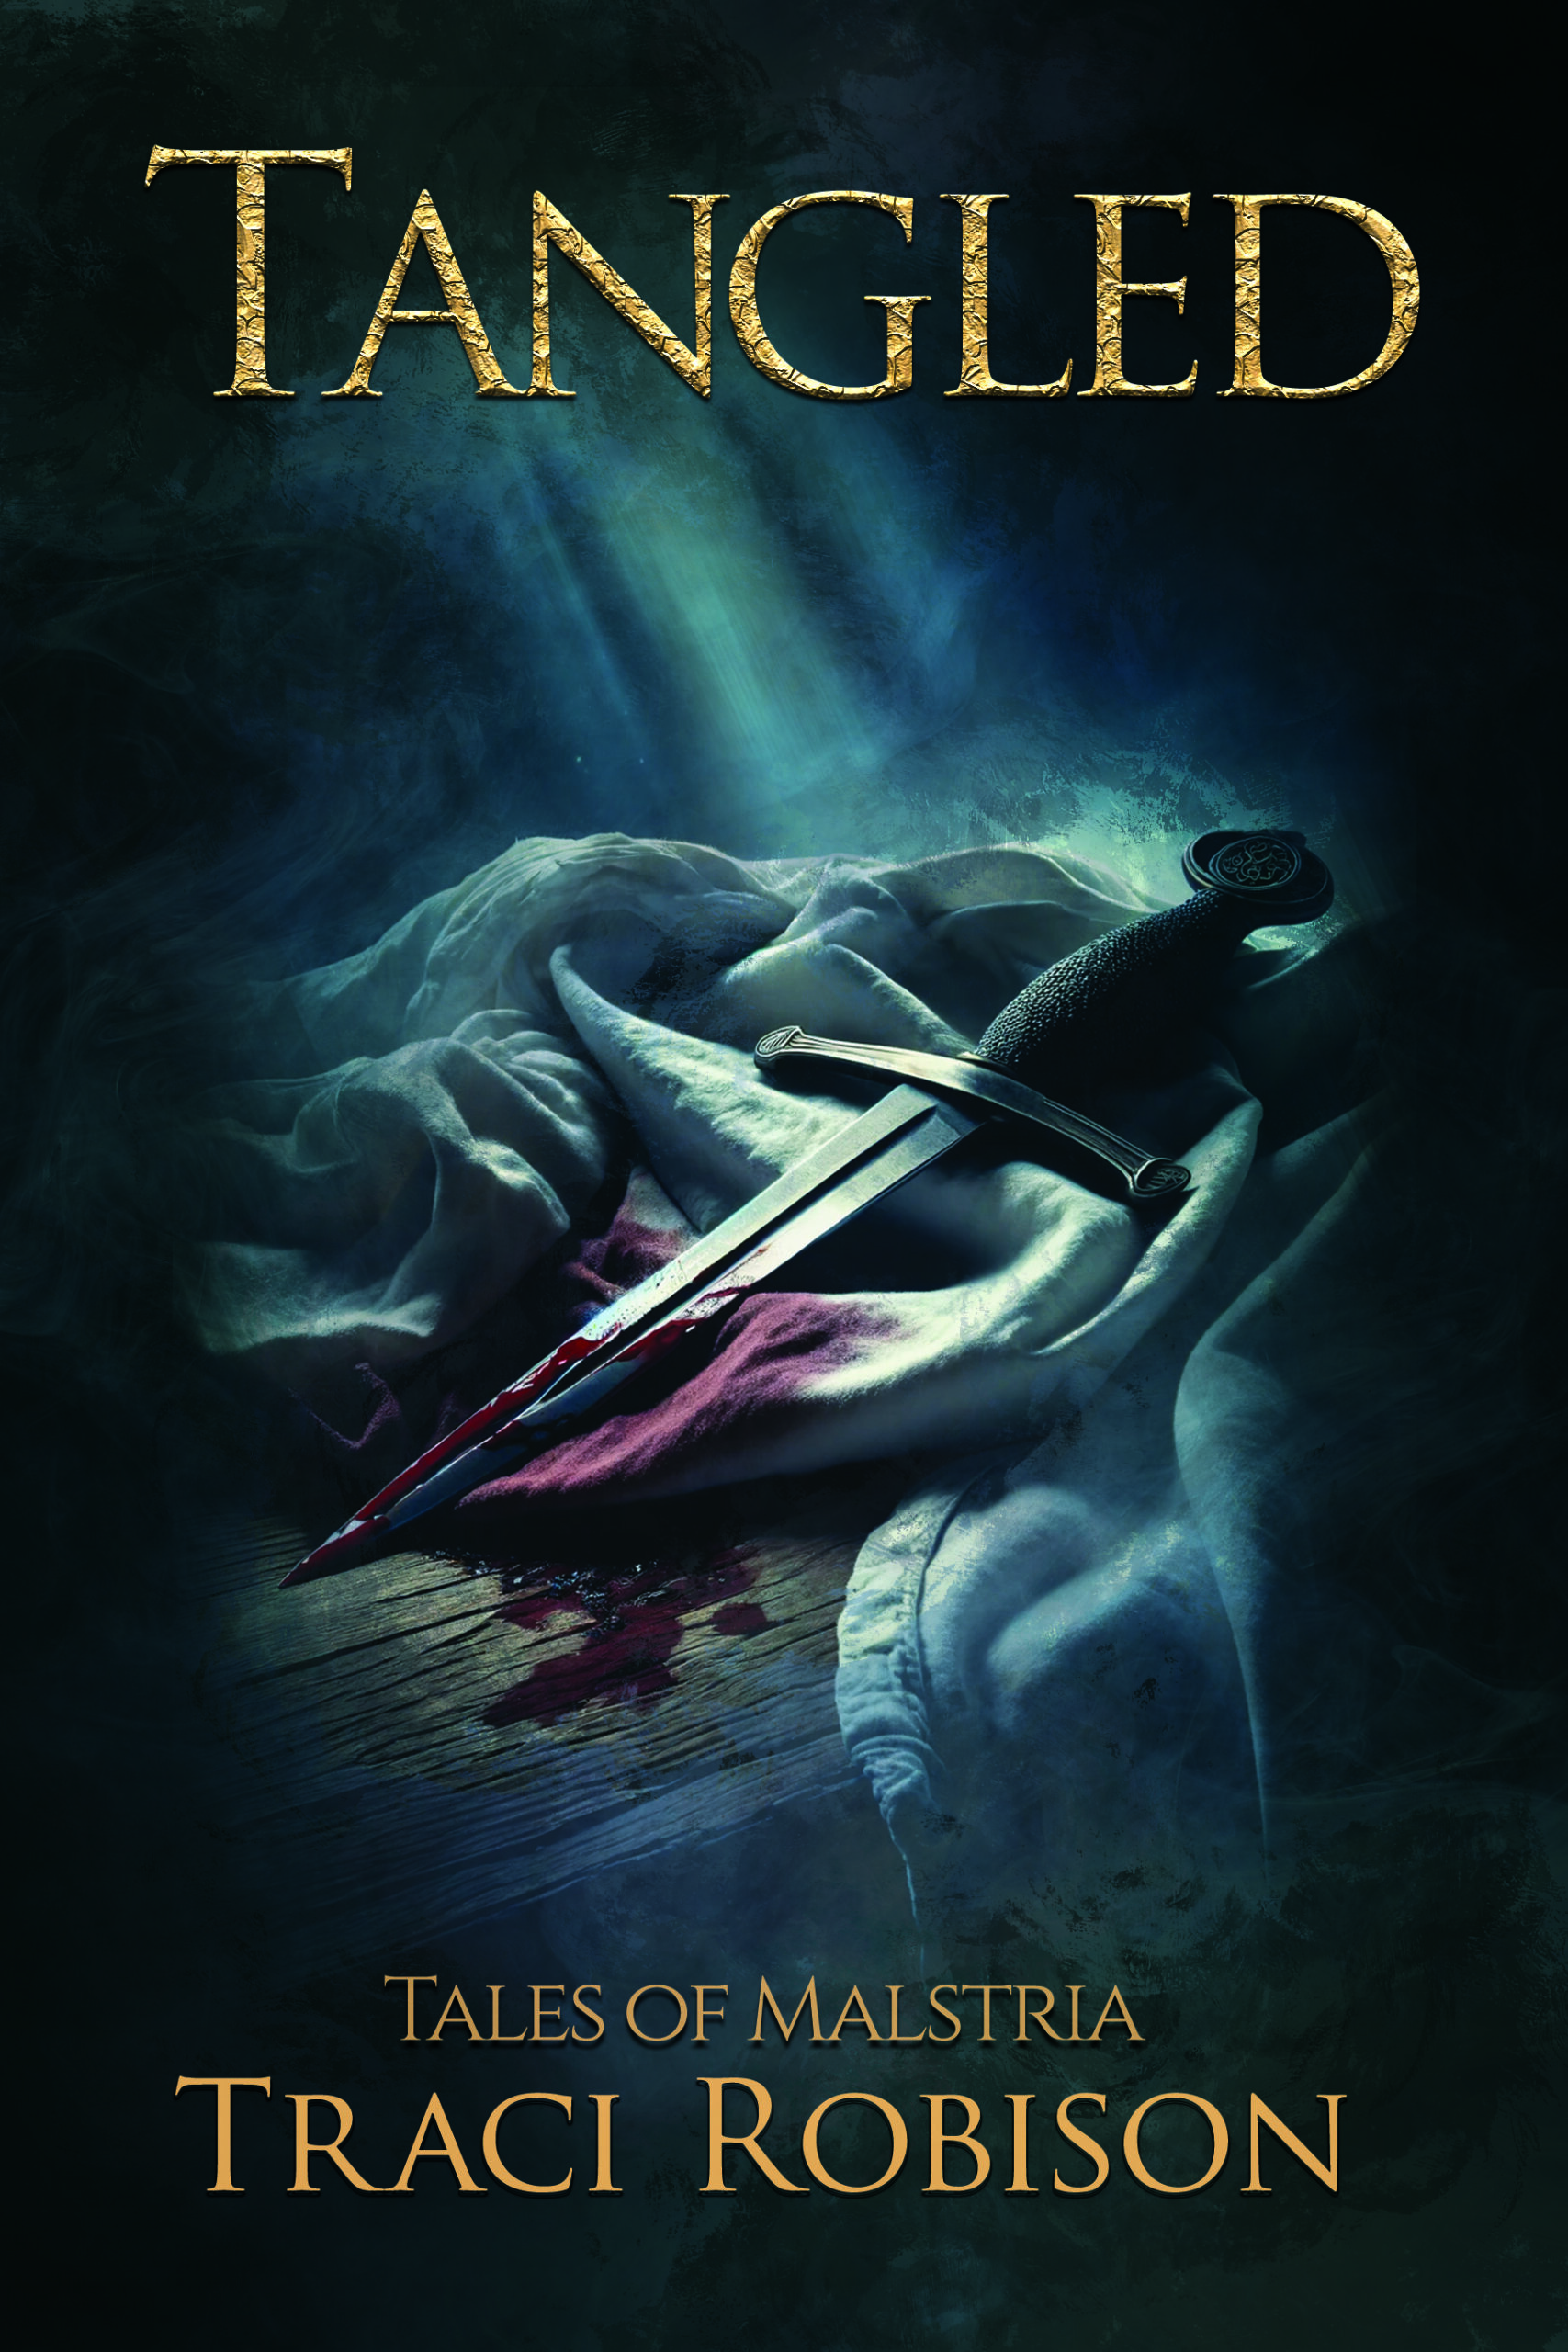 Tales of Malstria: A Spellbinding Vampire Novel